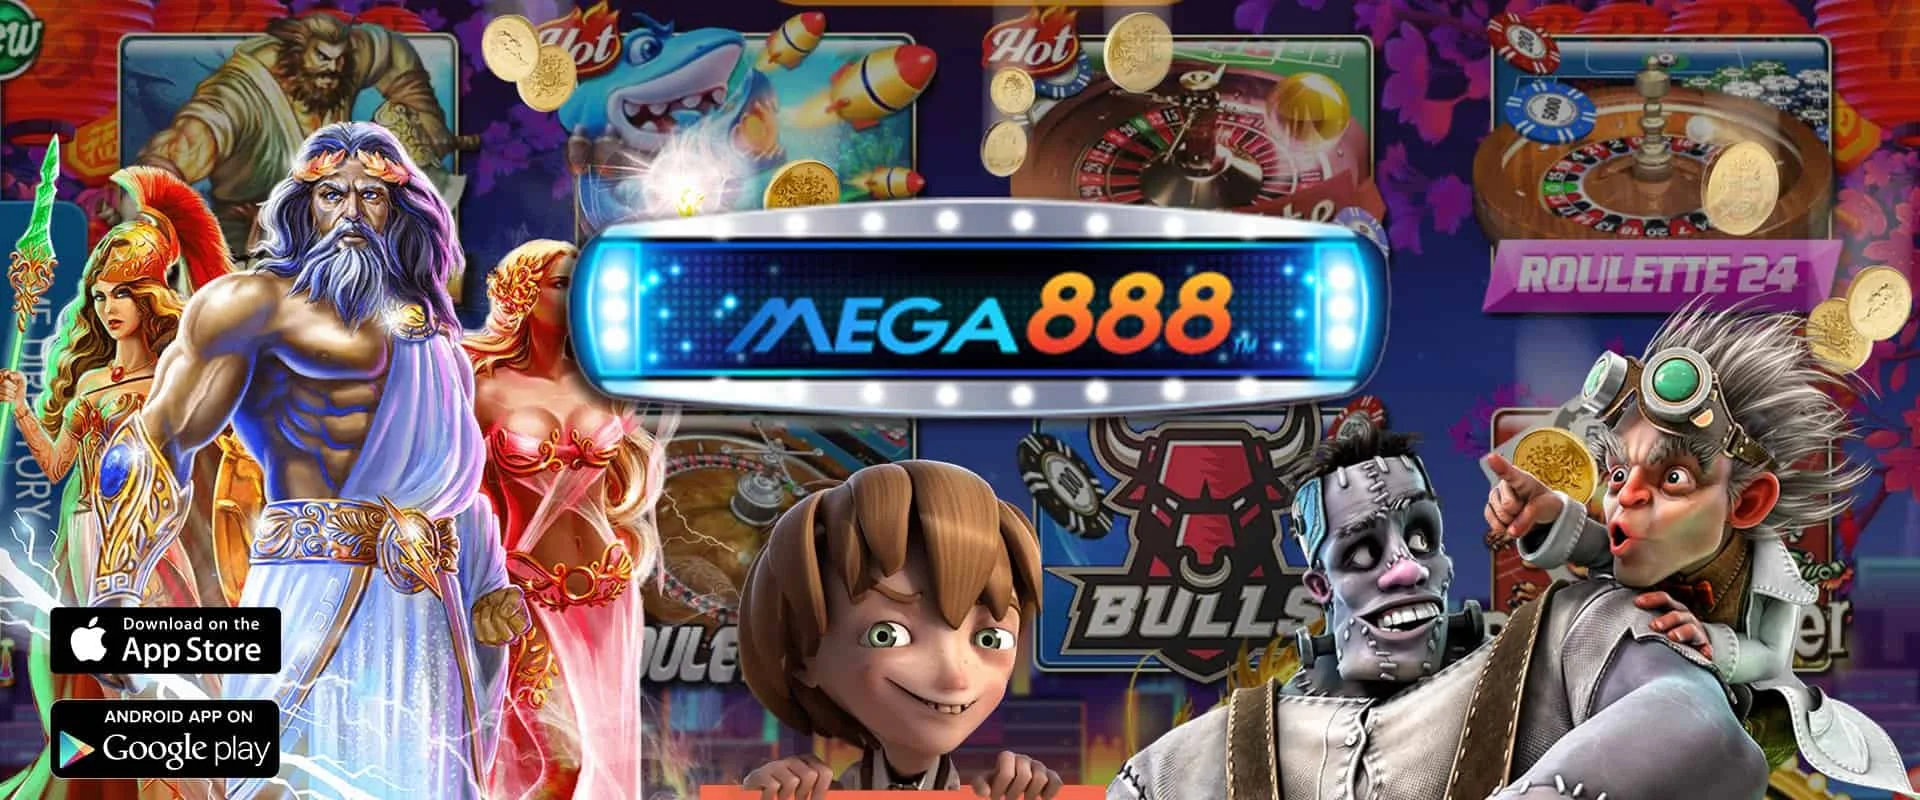 mega888 slot game